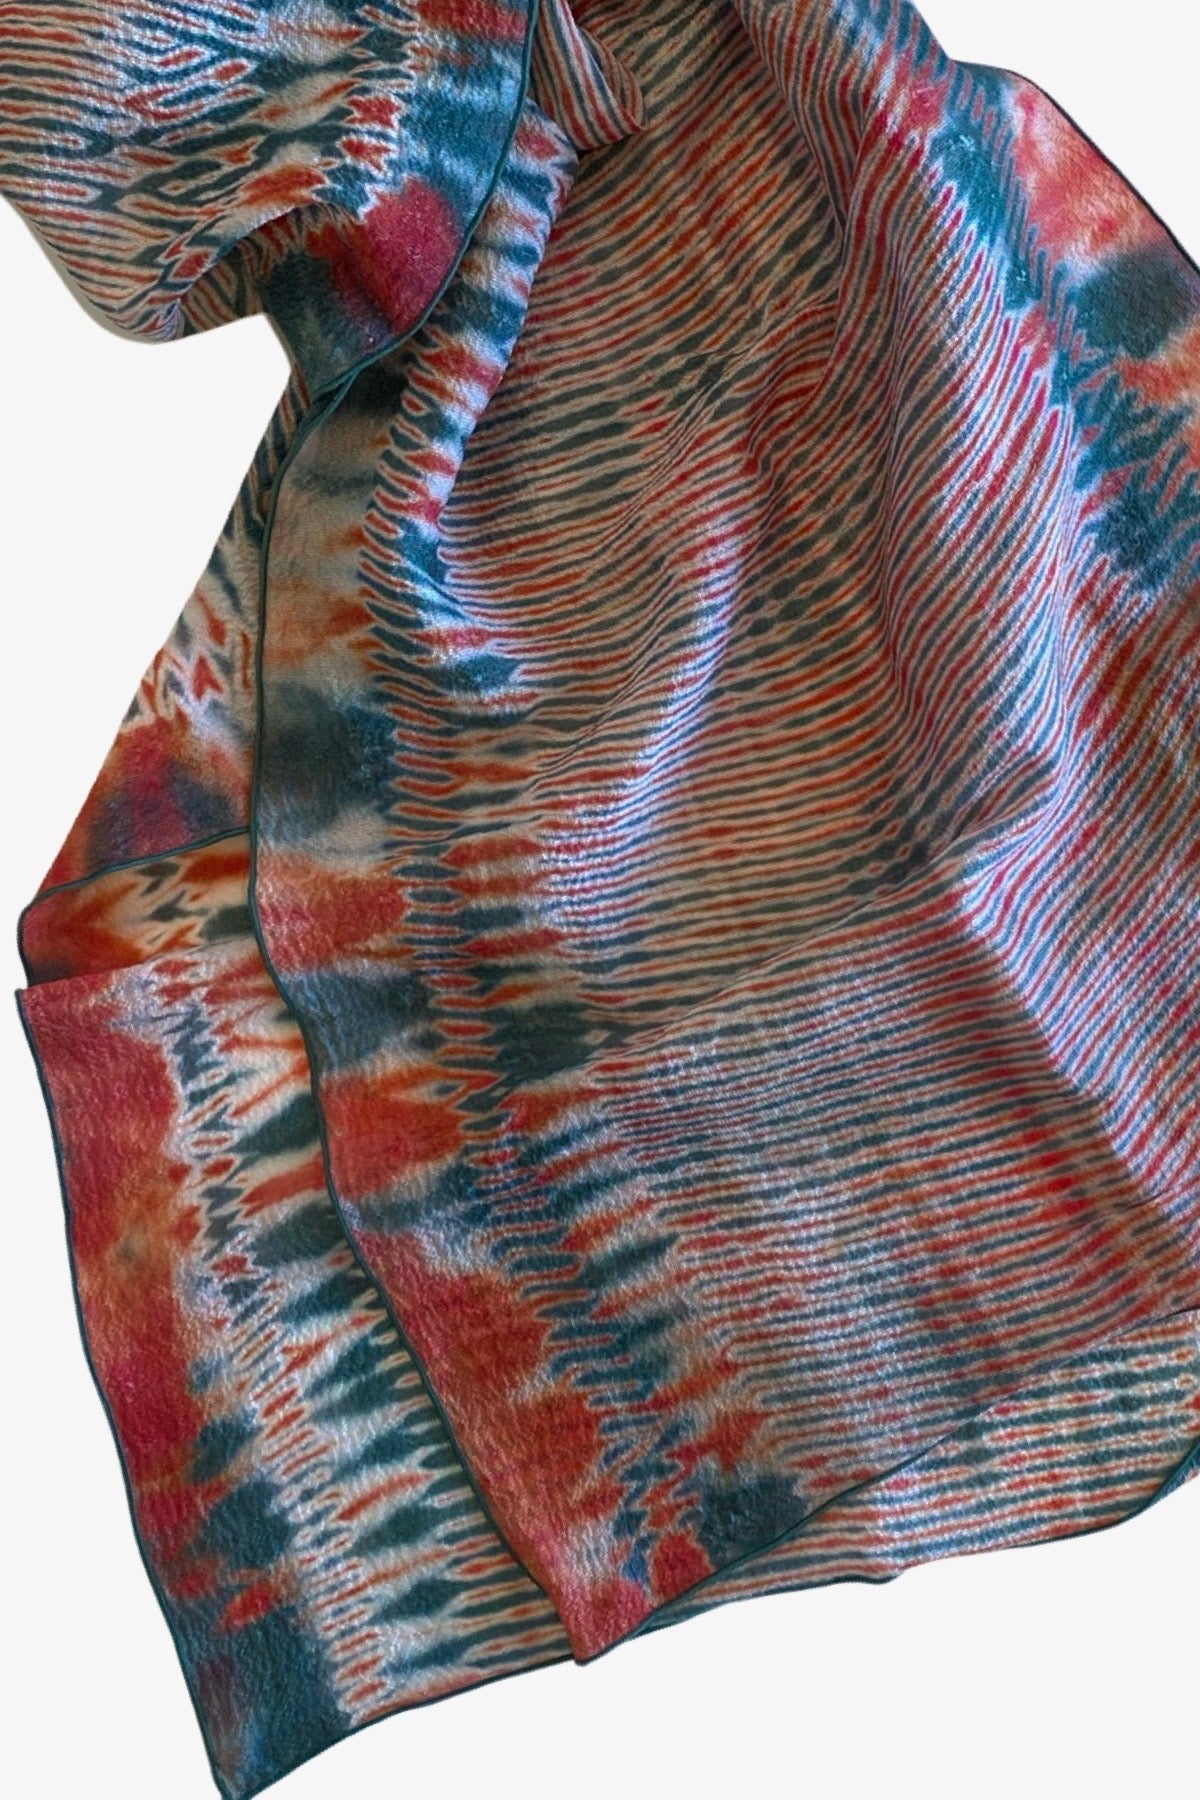 Shibori Dyed Silk Scarf in Cardinal